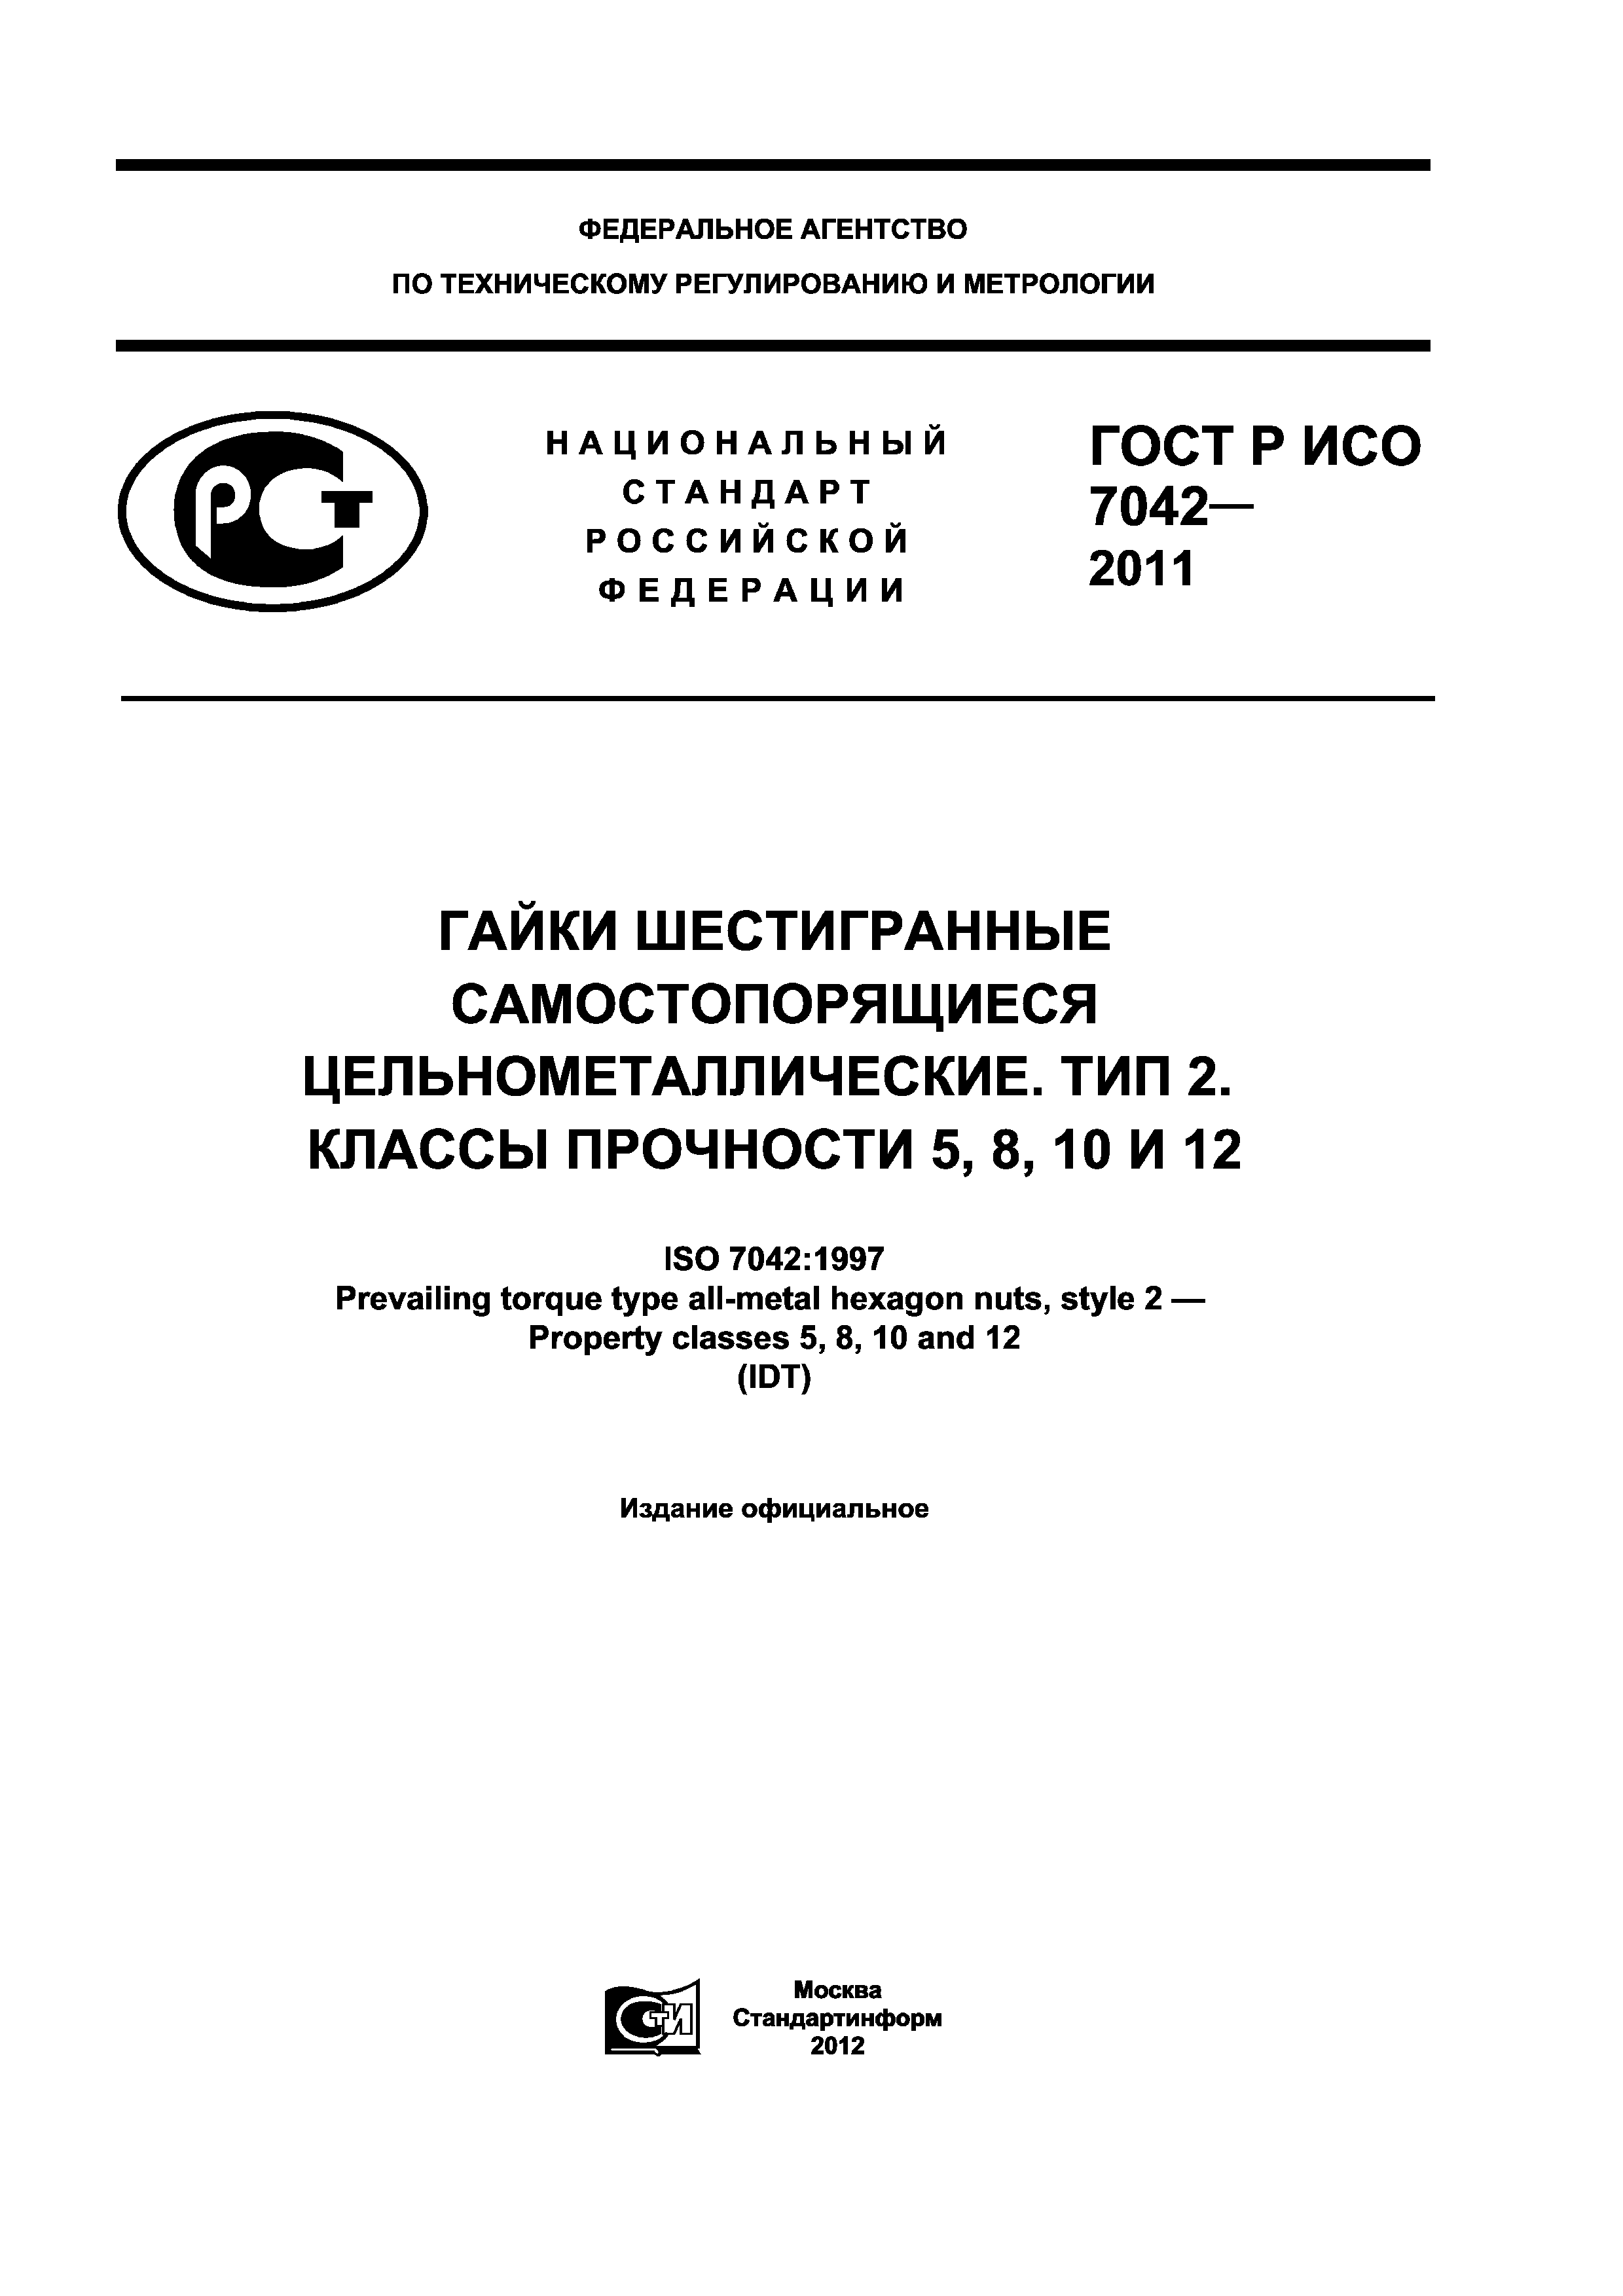 ГОСТ Р ИСО 7042-2011